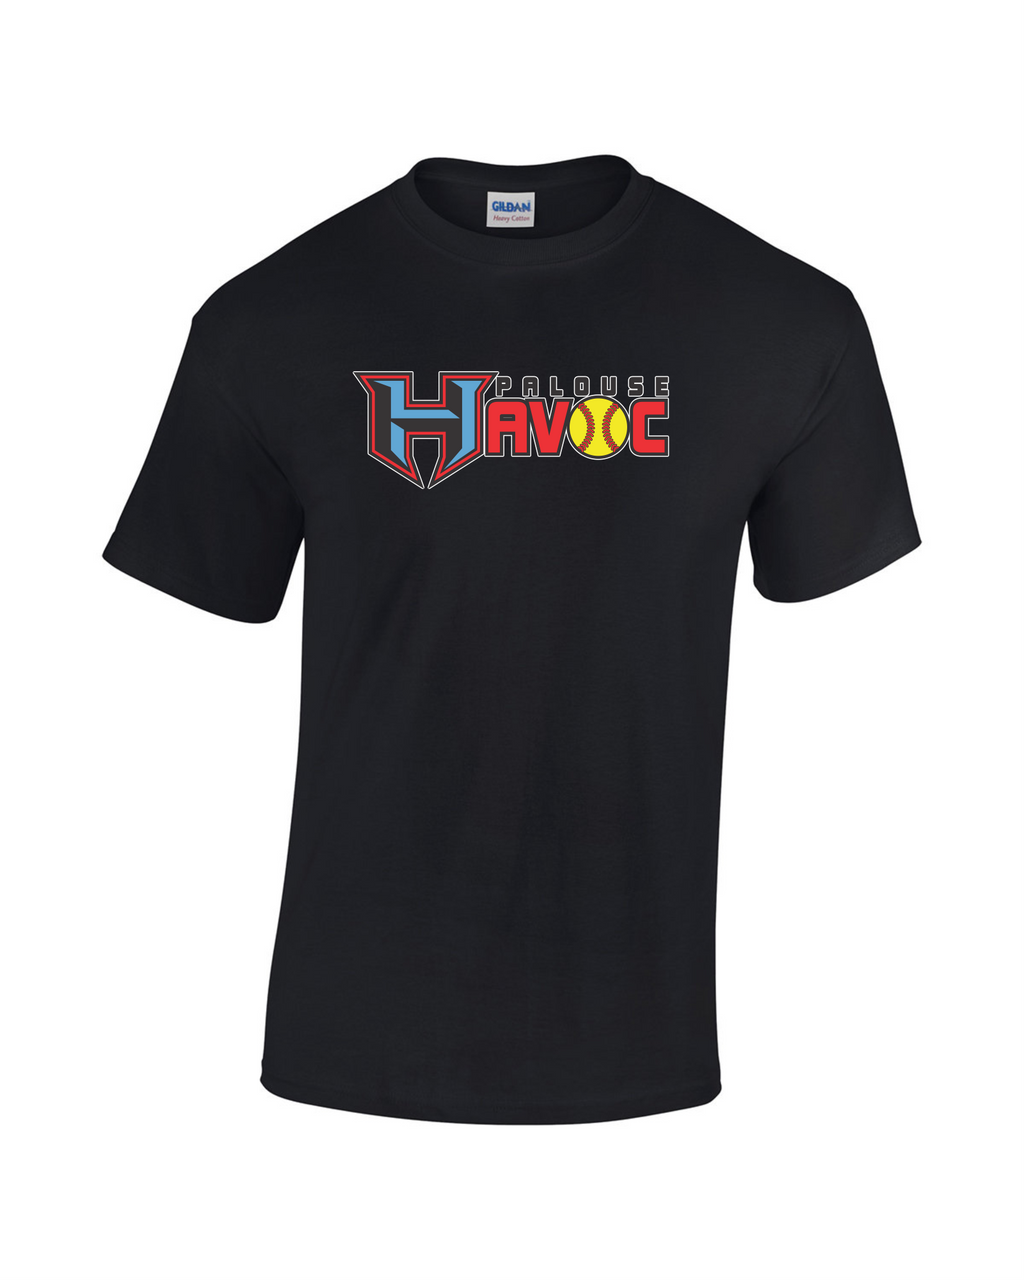 Palouse Havoc T-Shirt